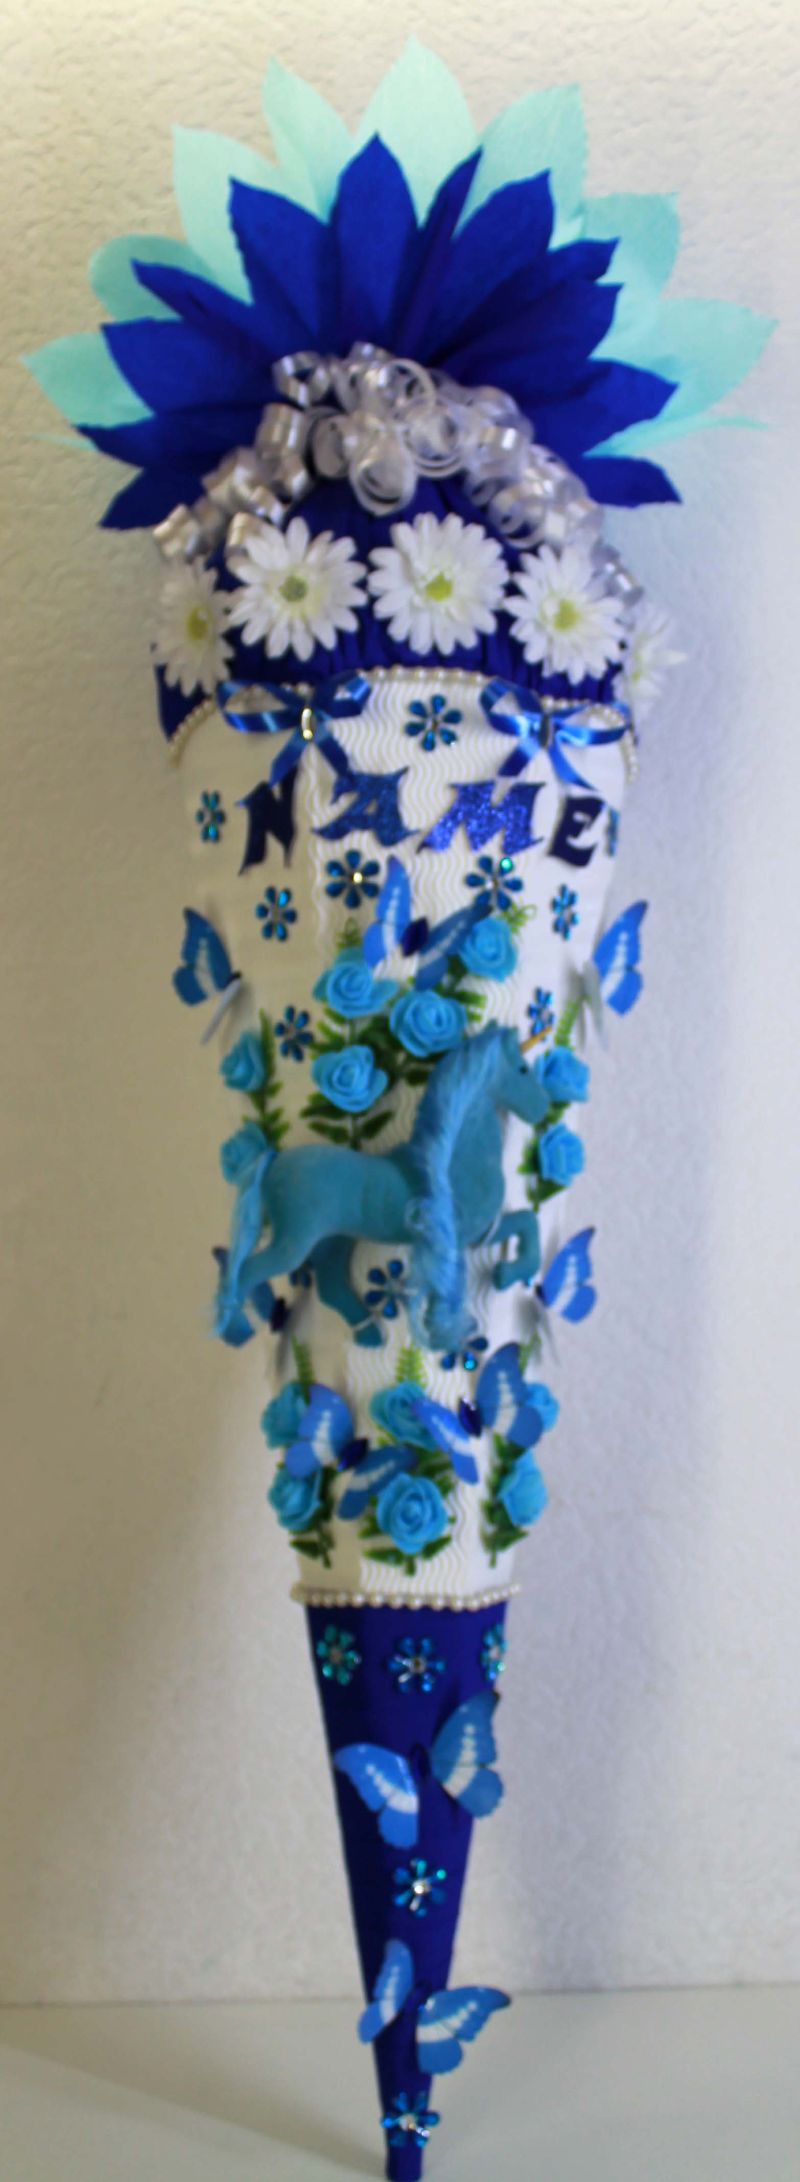  - Schultüte Zuckertüte Pferd Schmetterlinge Pferdchen Einhorn für Mädchen VERSANDBEREIT in blau türkis weiß